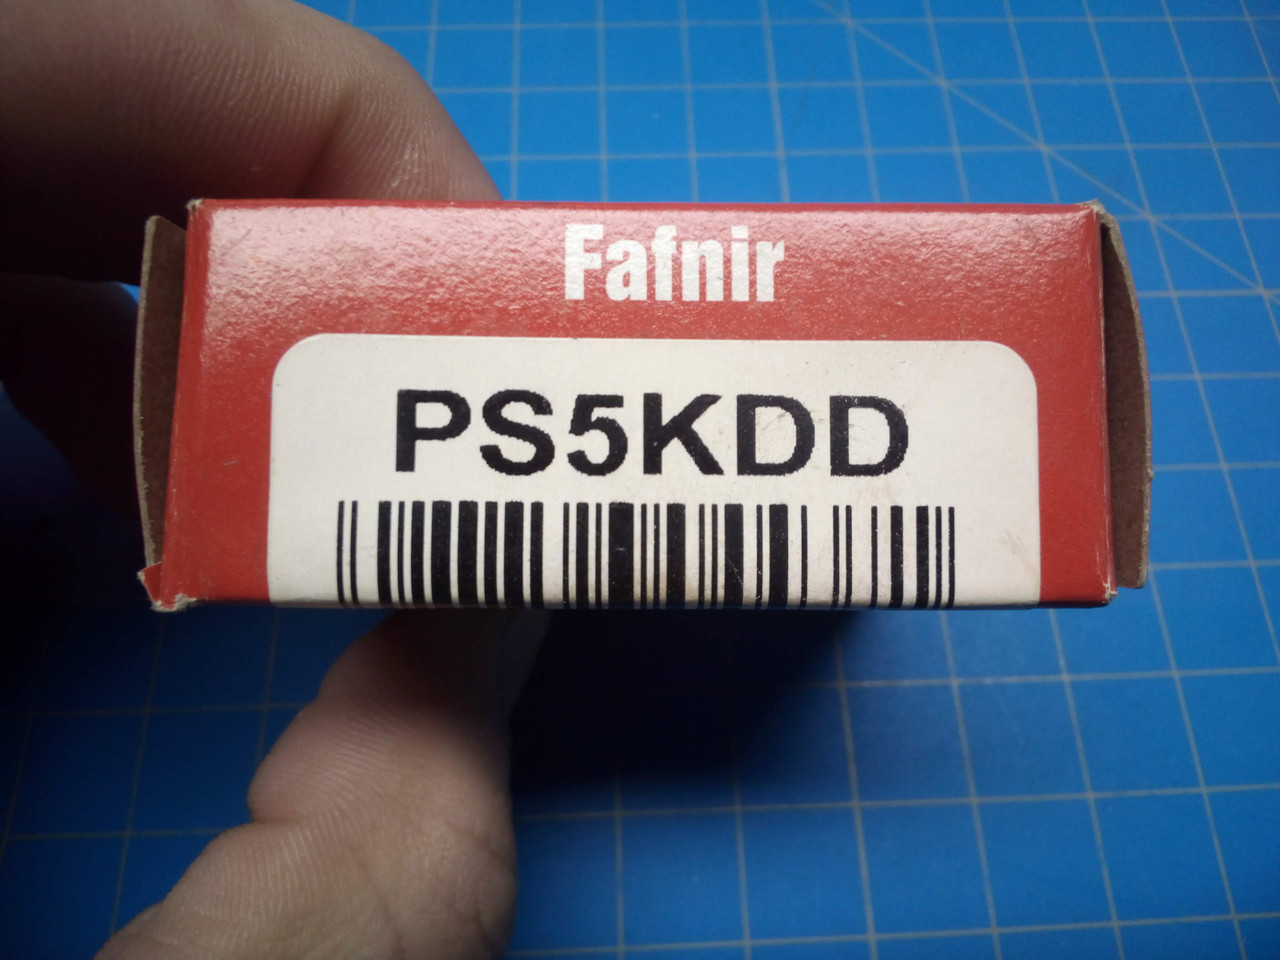 Fafnir Ball Bearing PS5KDD